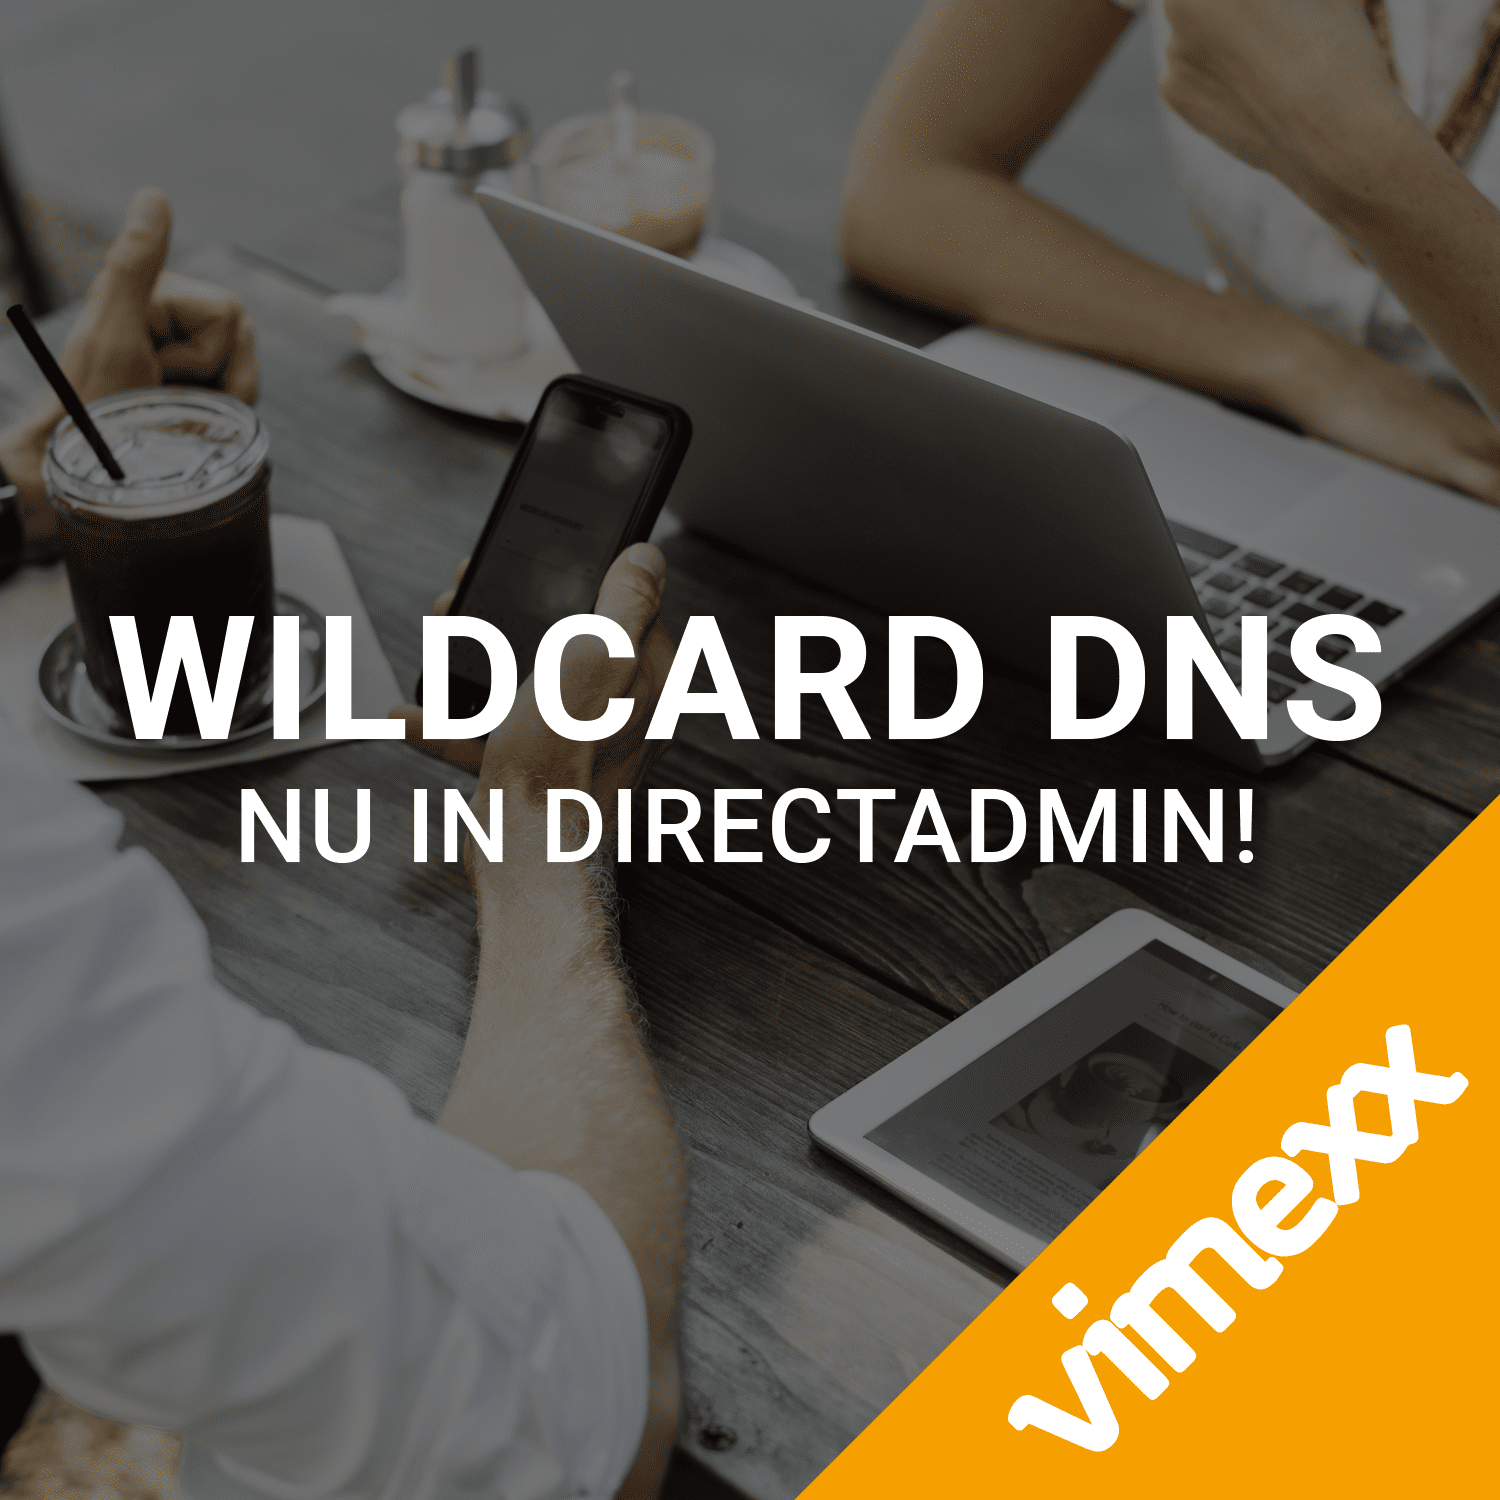 Wildcard DNS vimexx